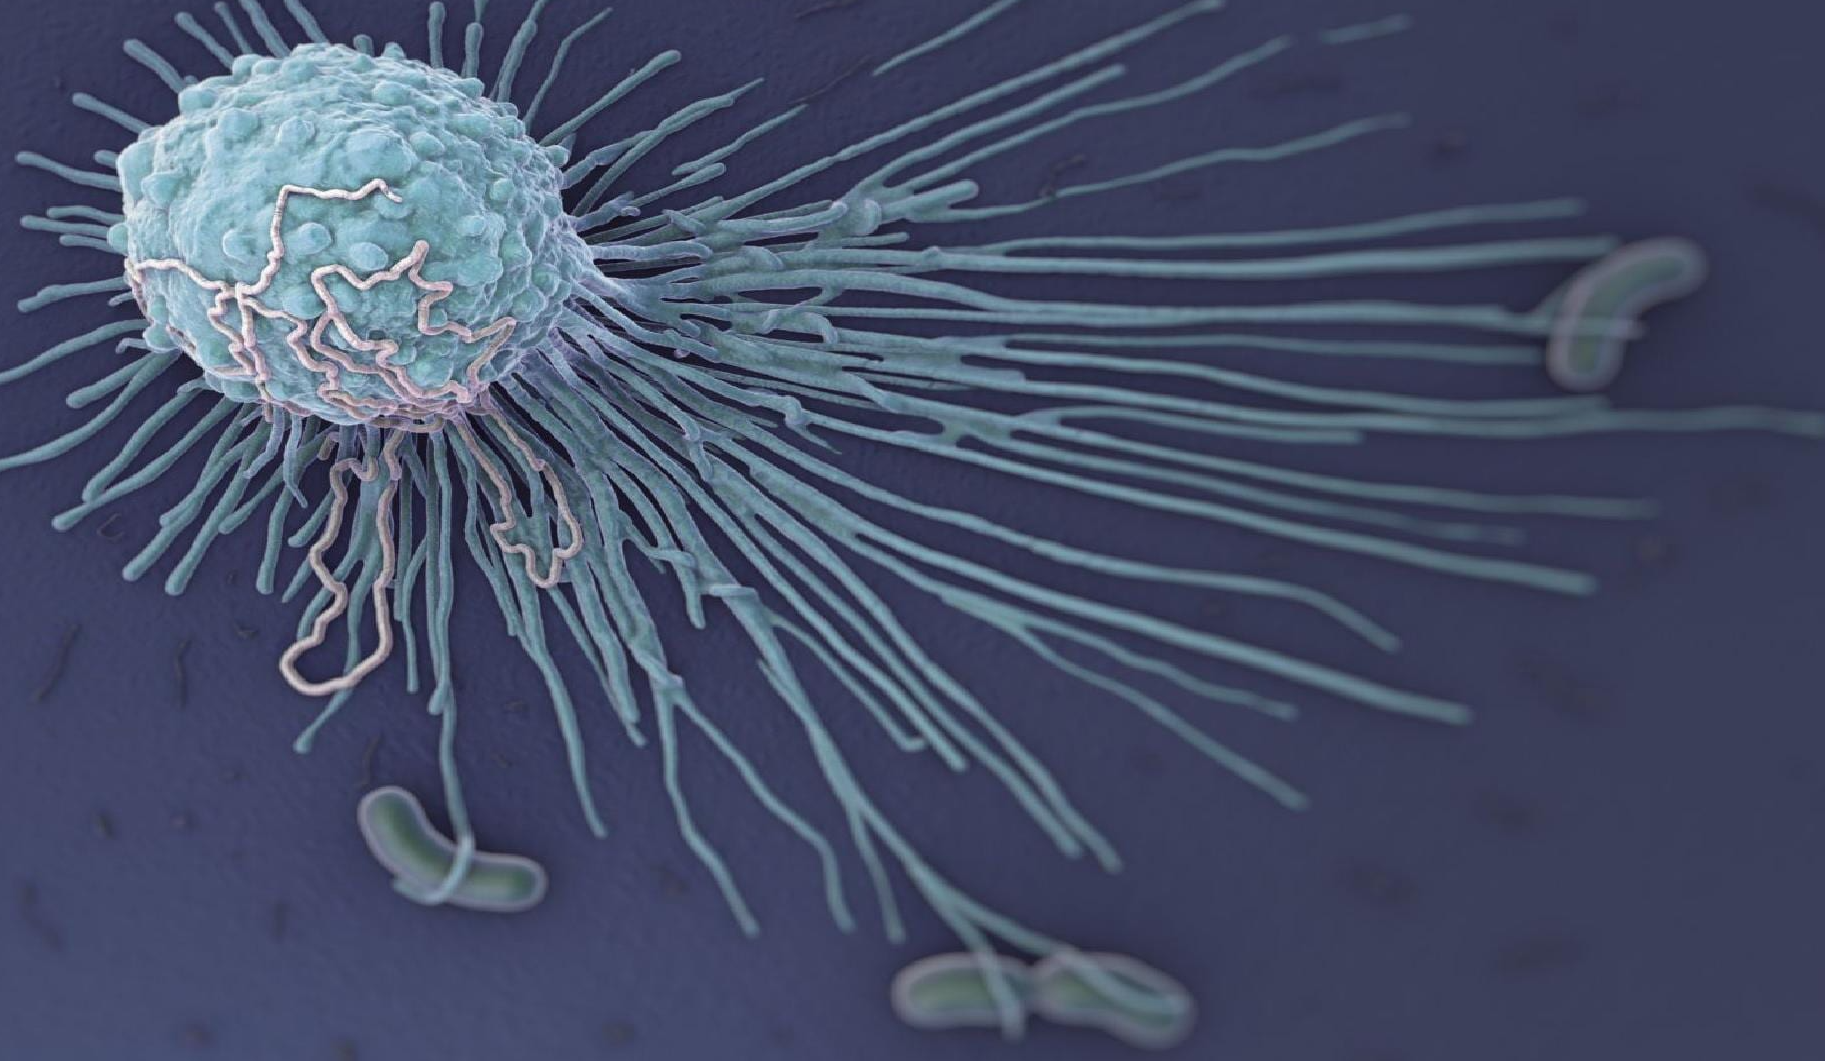 巨噬细胞在肝癌组织中的空间分布及其意义